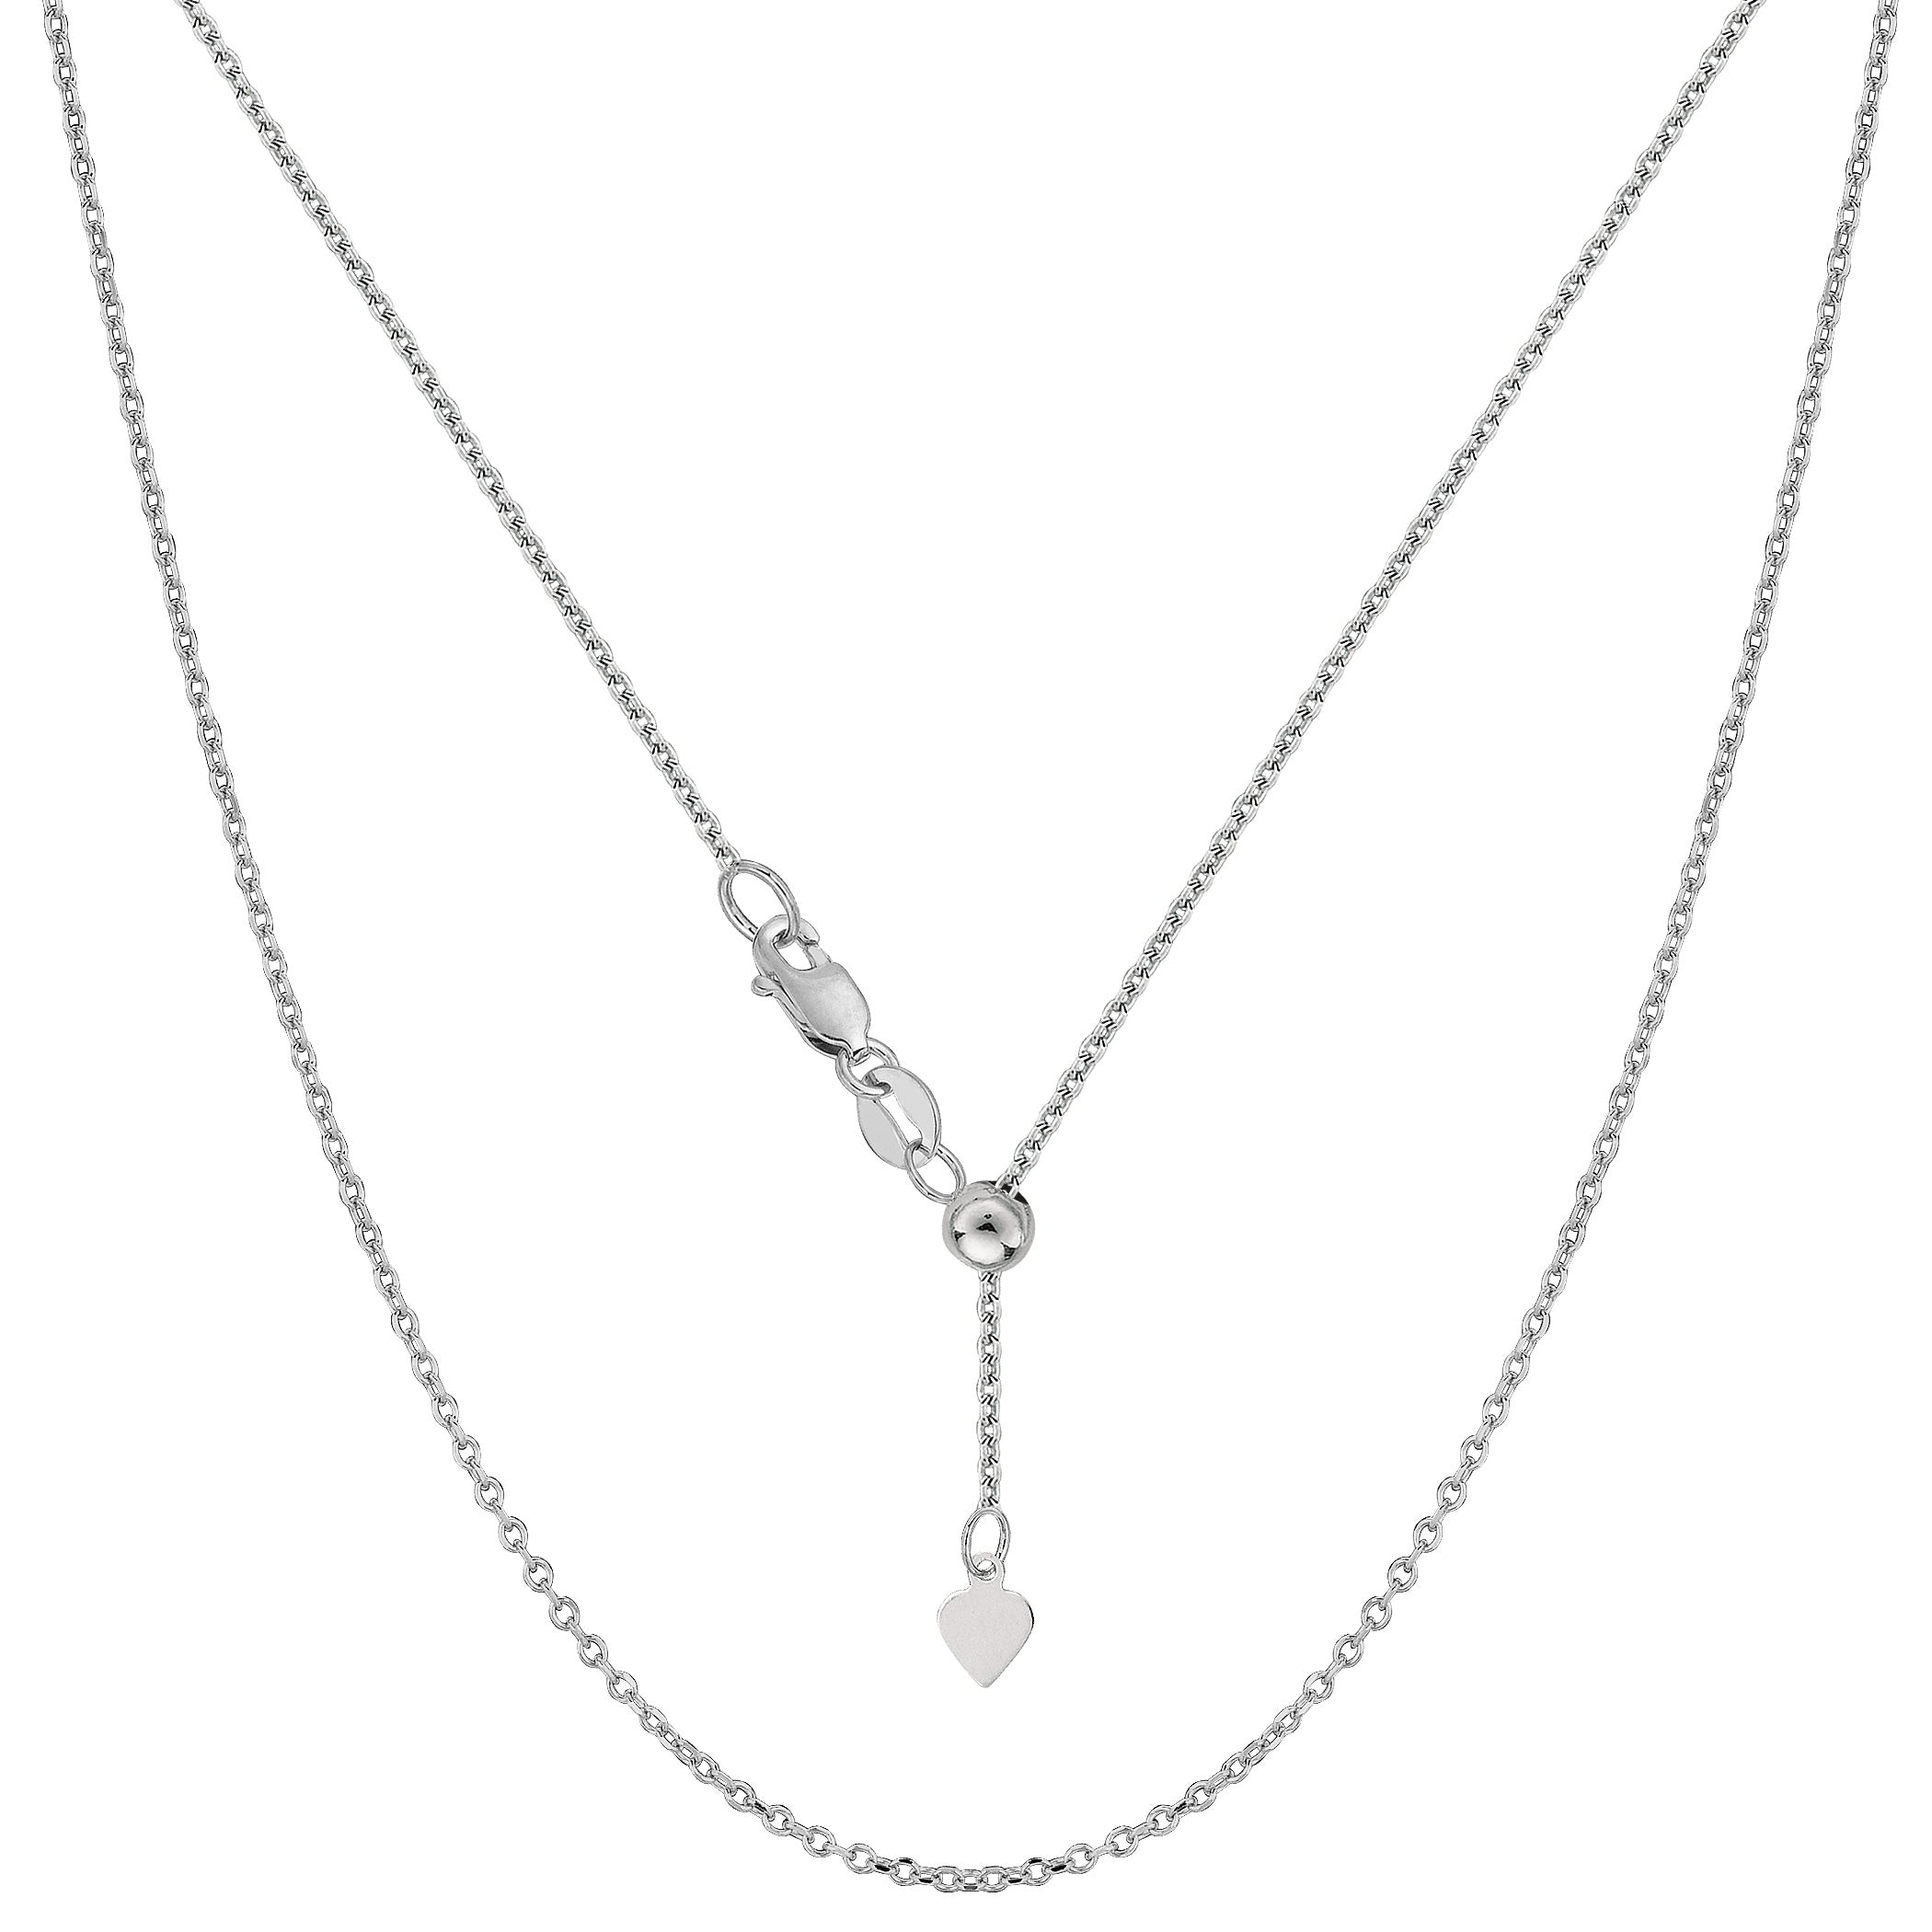 Collar de cadena tipo cable ajustable con baño de rodio en plata de ley, 0,9 mm, 22" joyería fina de diseño para hombres y mujeres